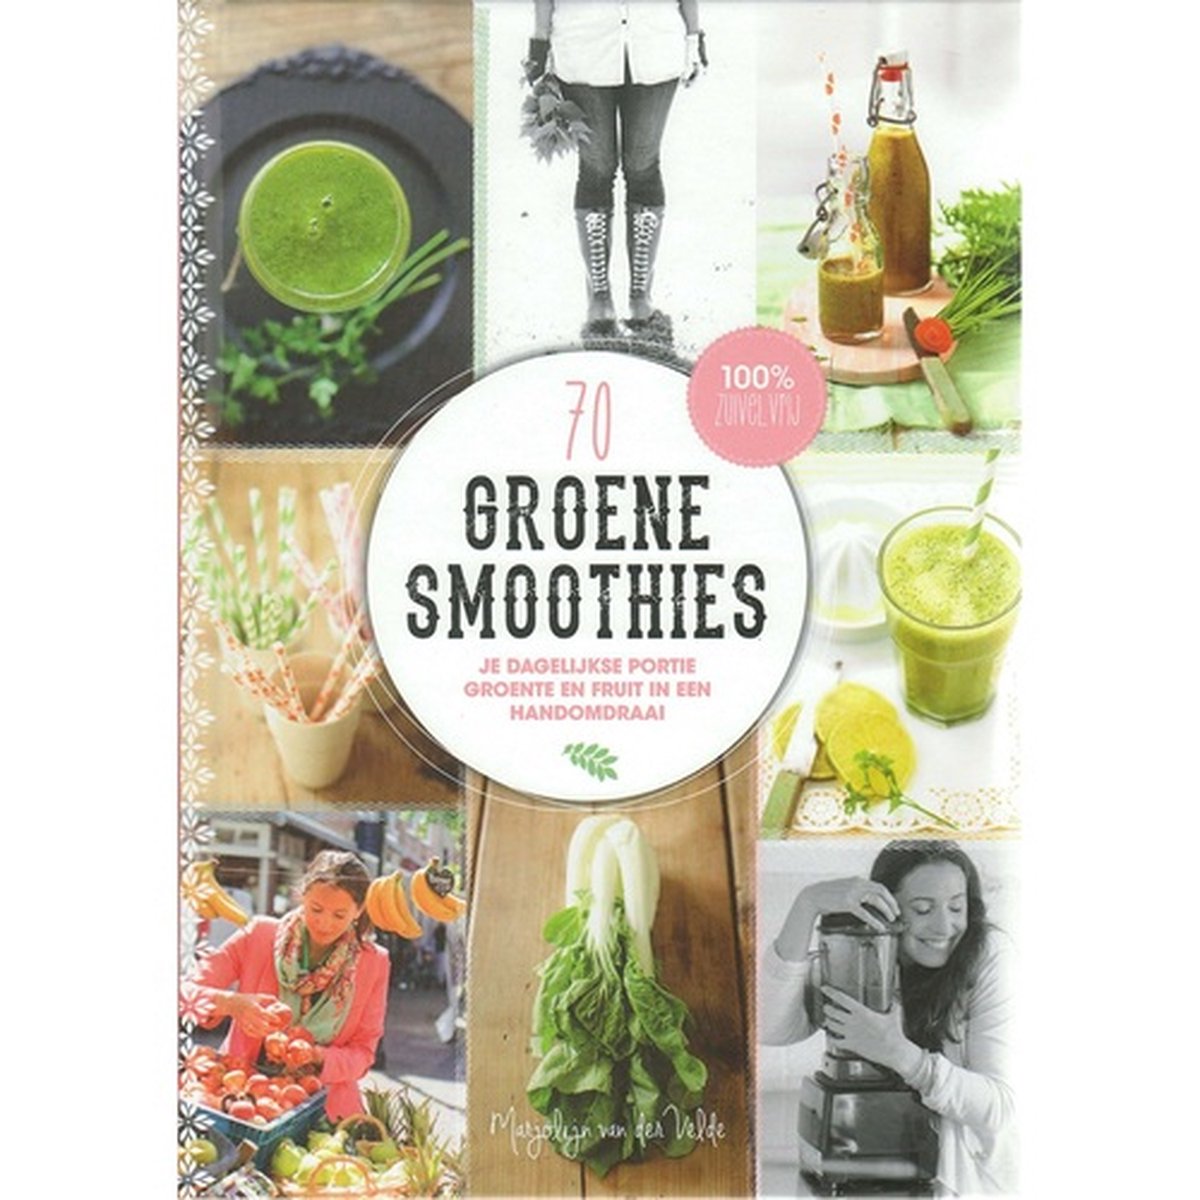 70 groene smoothies - Marjolijn van der Velde